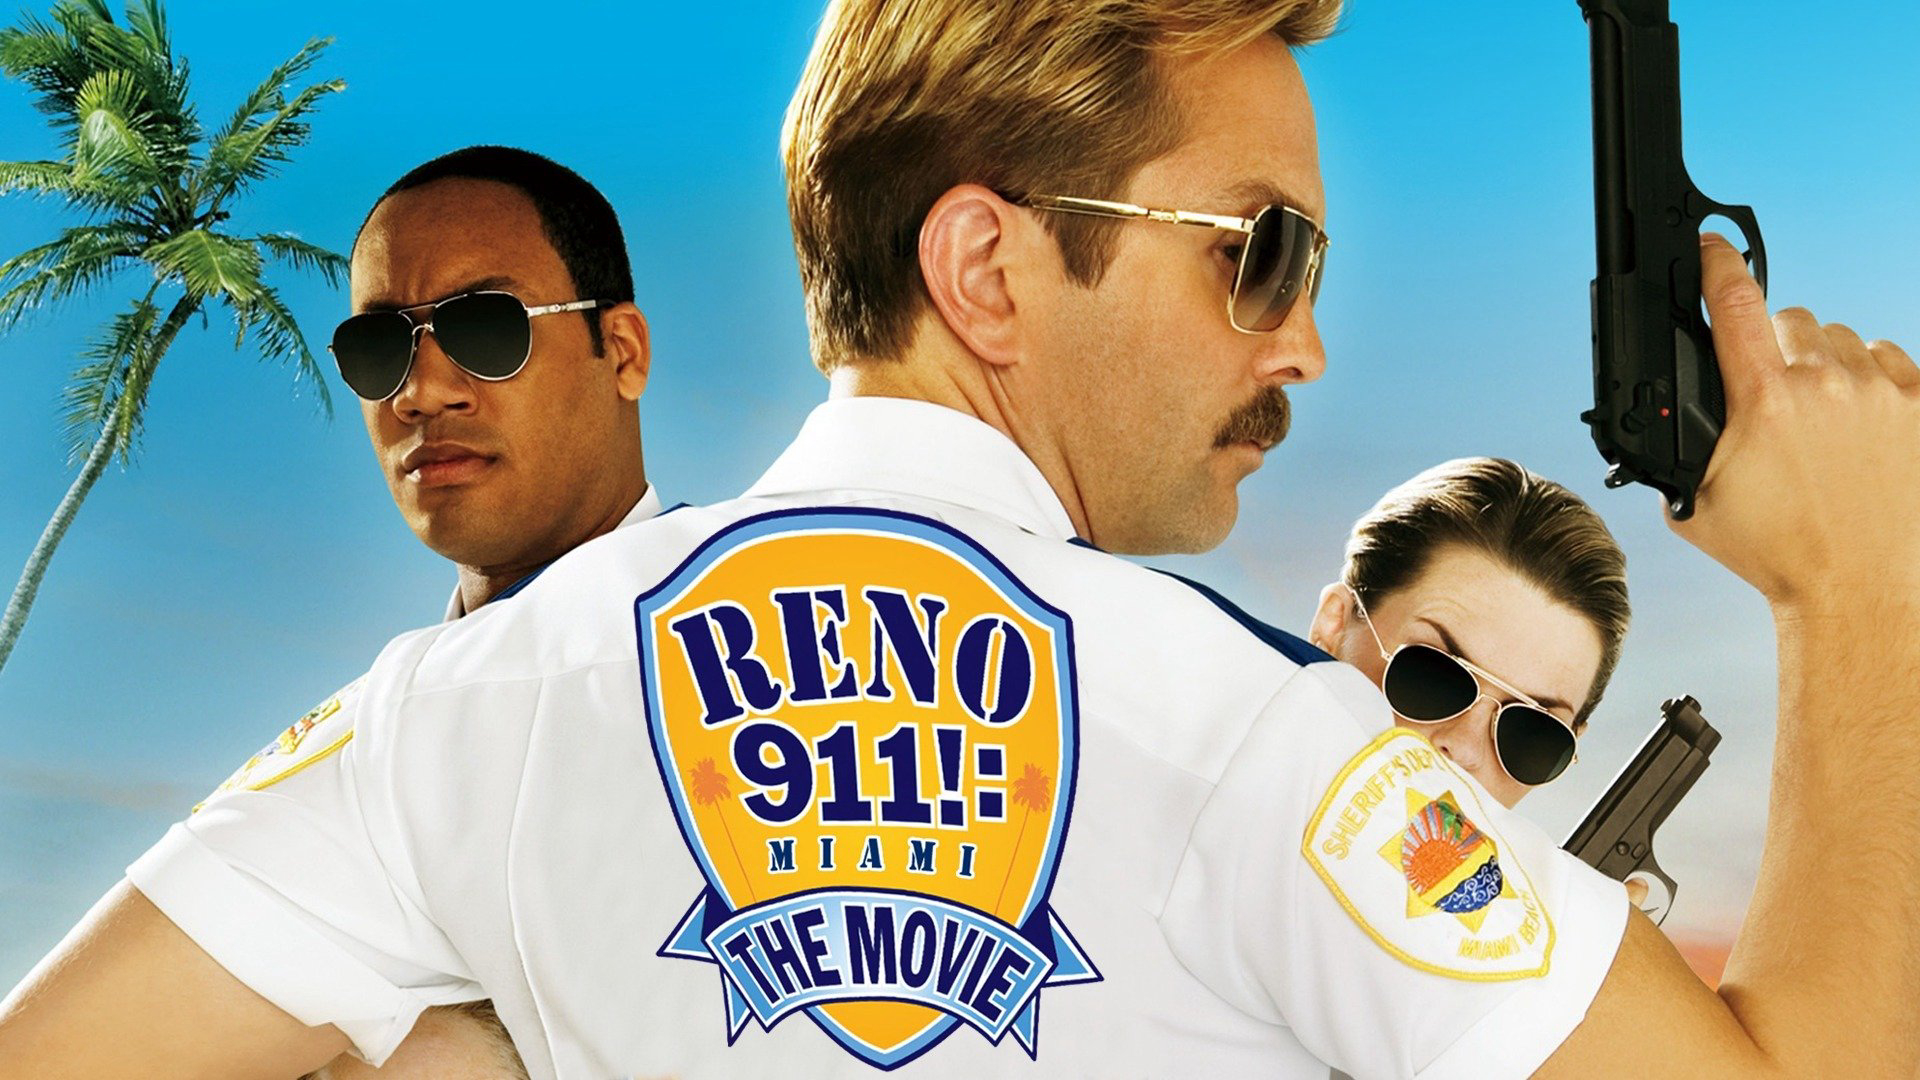 Reno 911!: Miami / Reno 911!: Miami (2007)